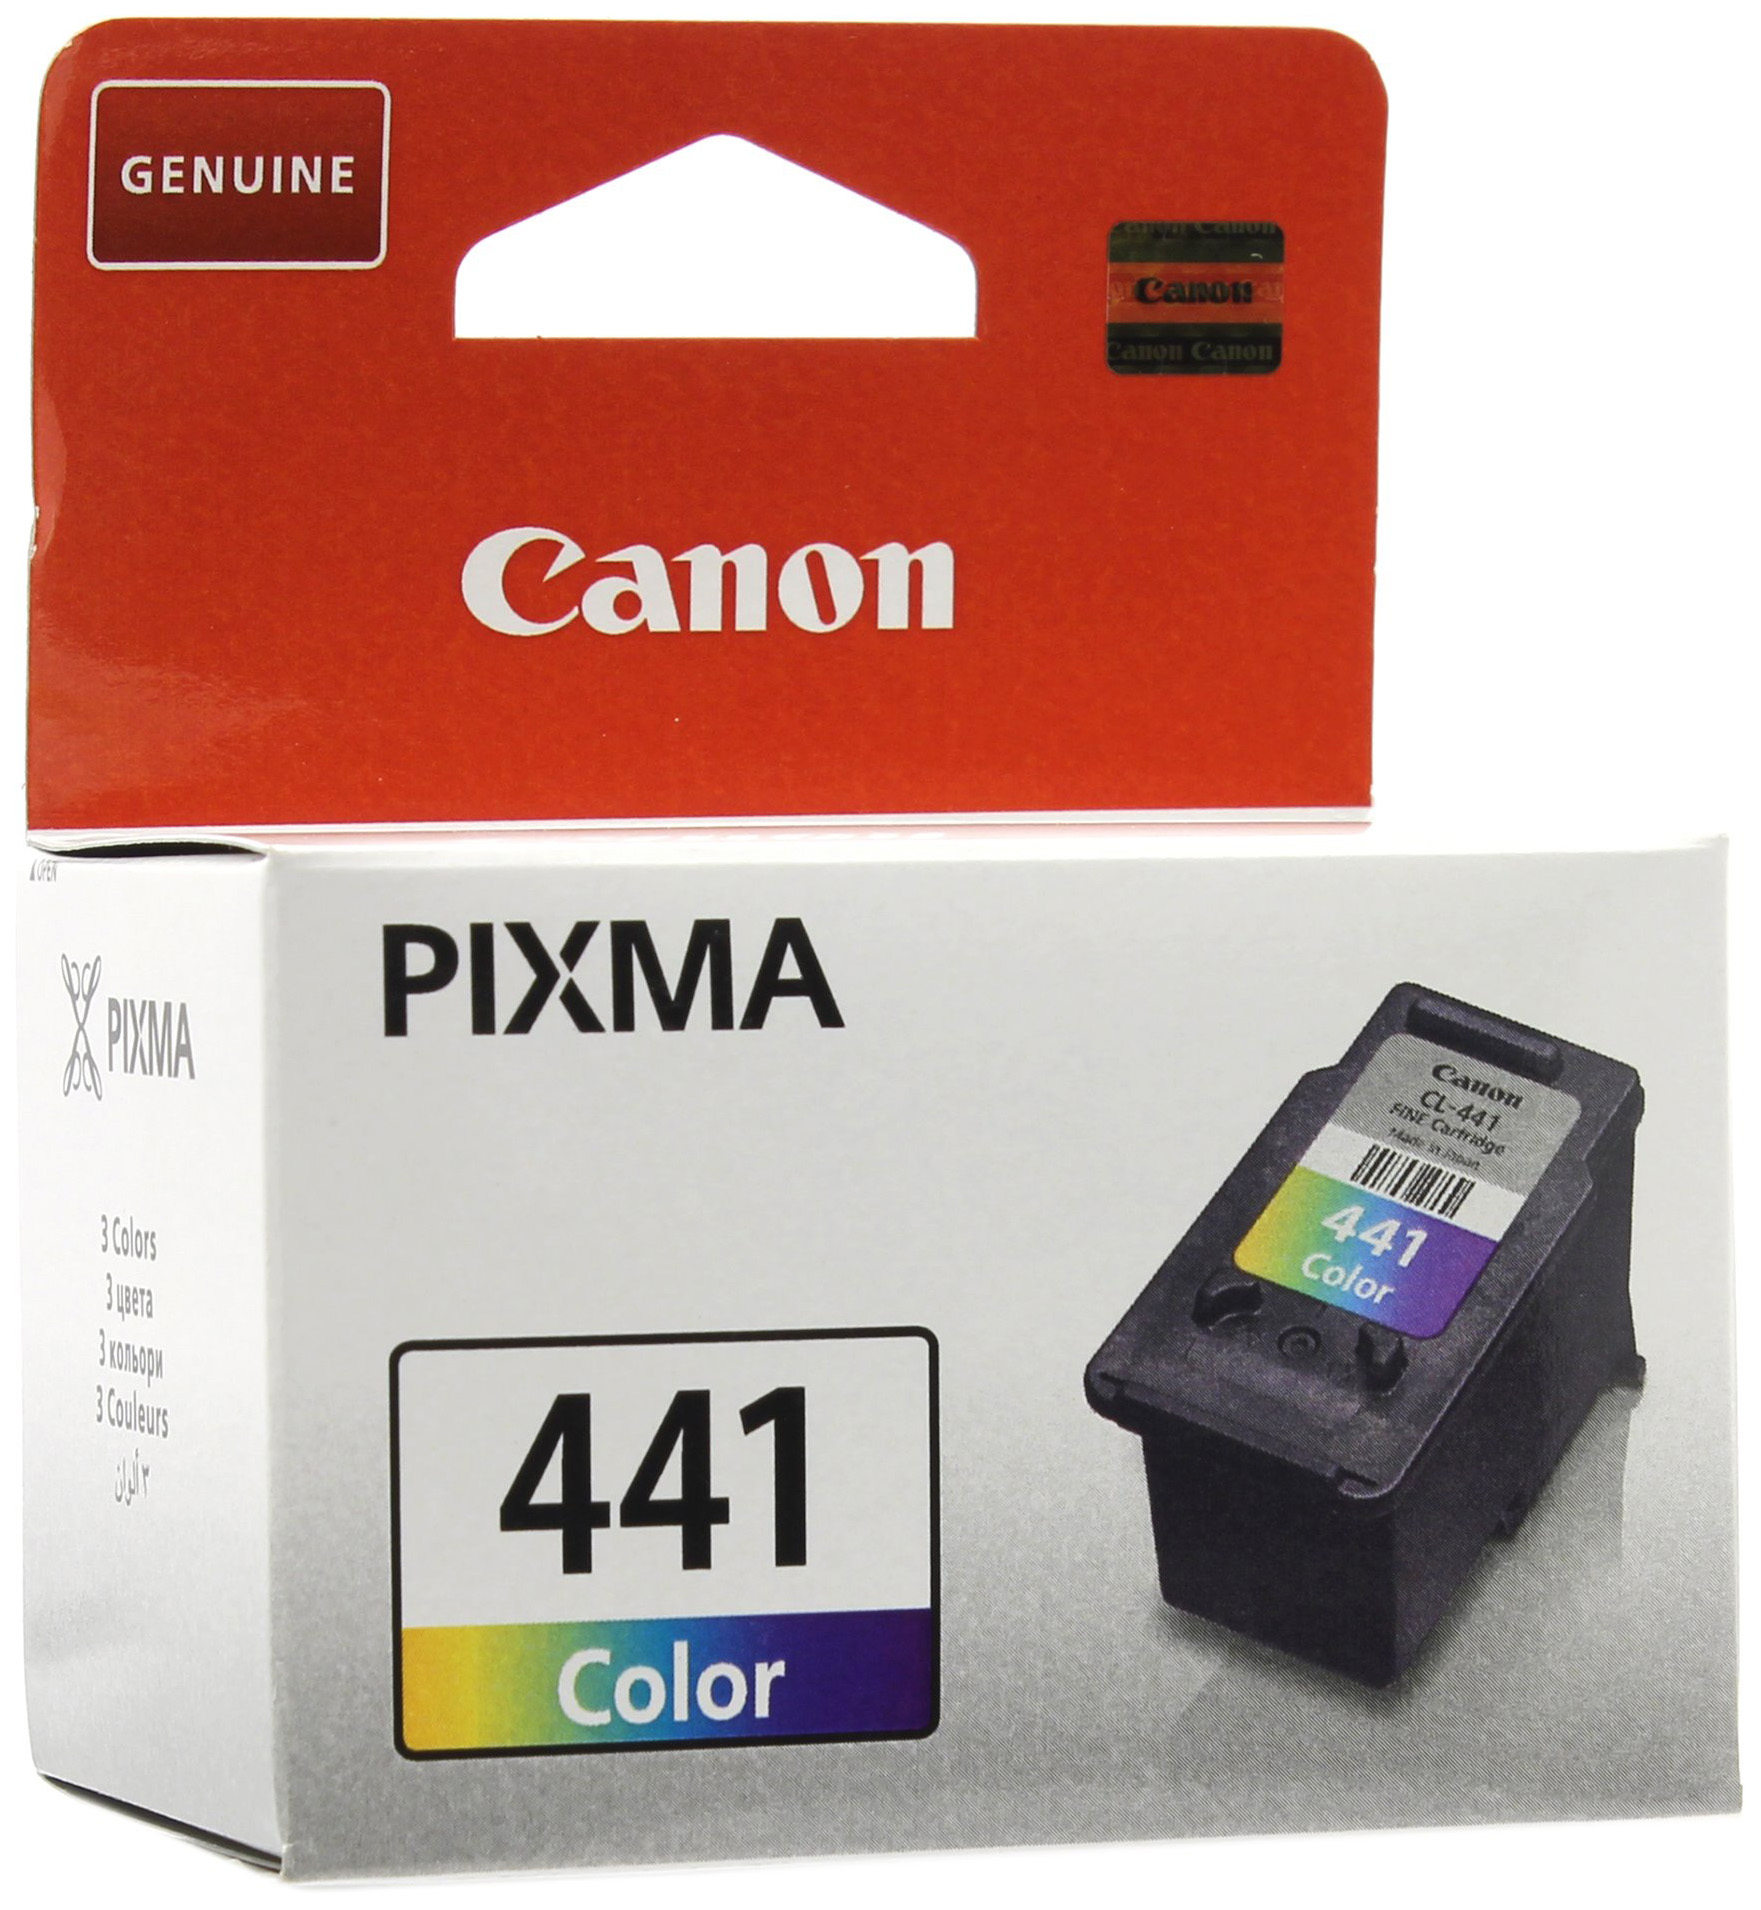 Картриджи canon pixma mg. Canon CL-441. Картридж Canon CL-441 Color. Картридж для принтера Canon PIXMA mg2100. Принтер Canon PIXMA mg3640 картриджи.